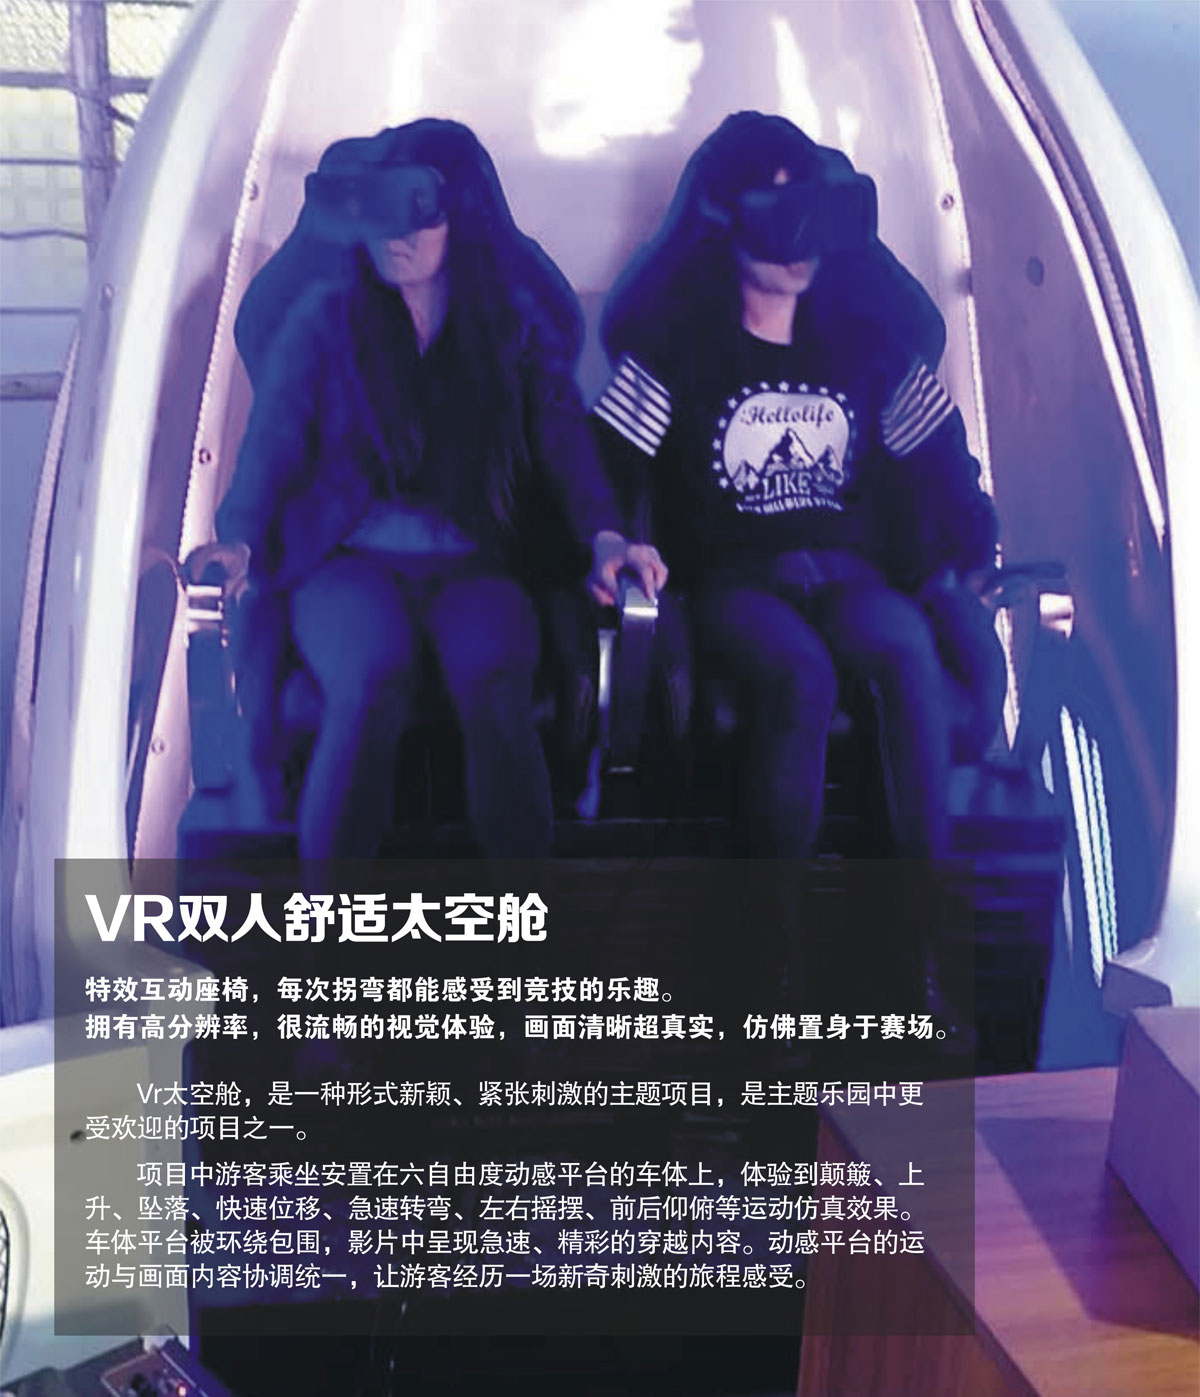 教育体验VR双人舒适太空舱.jpg